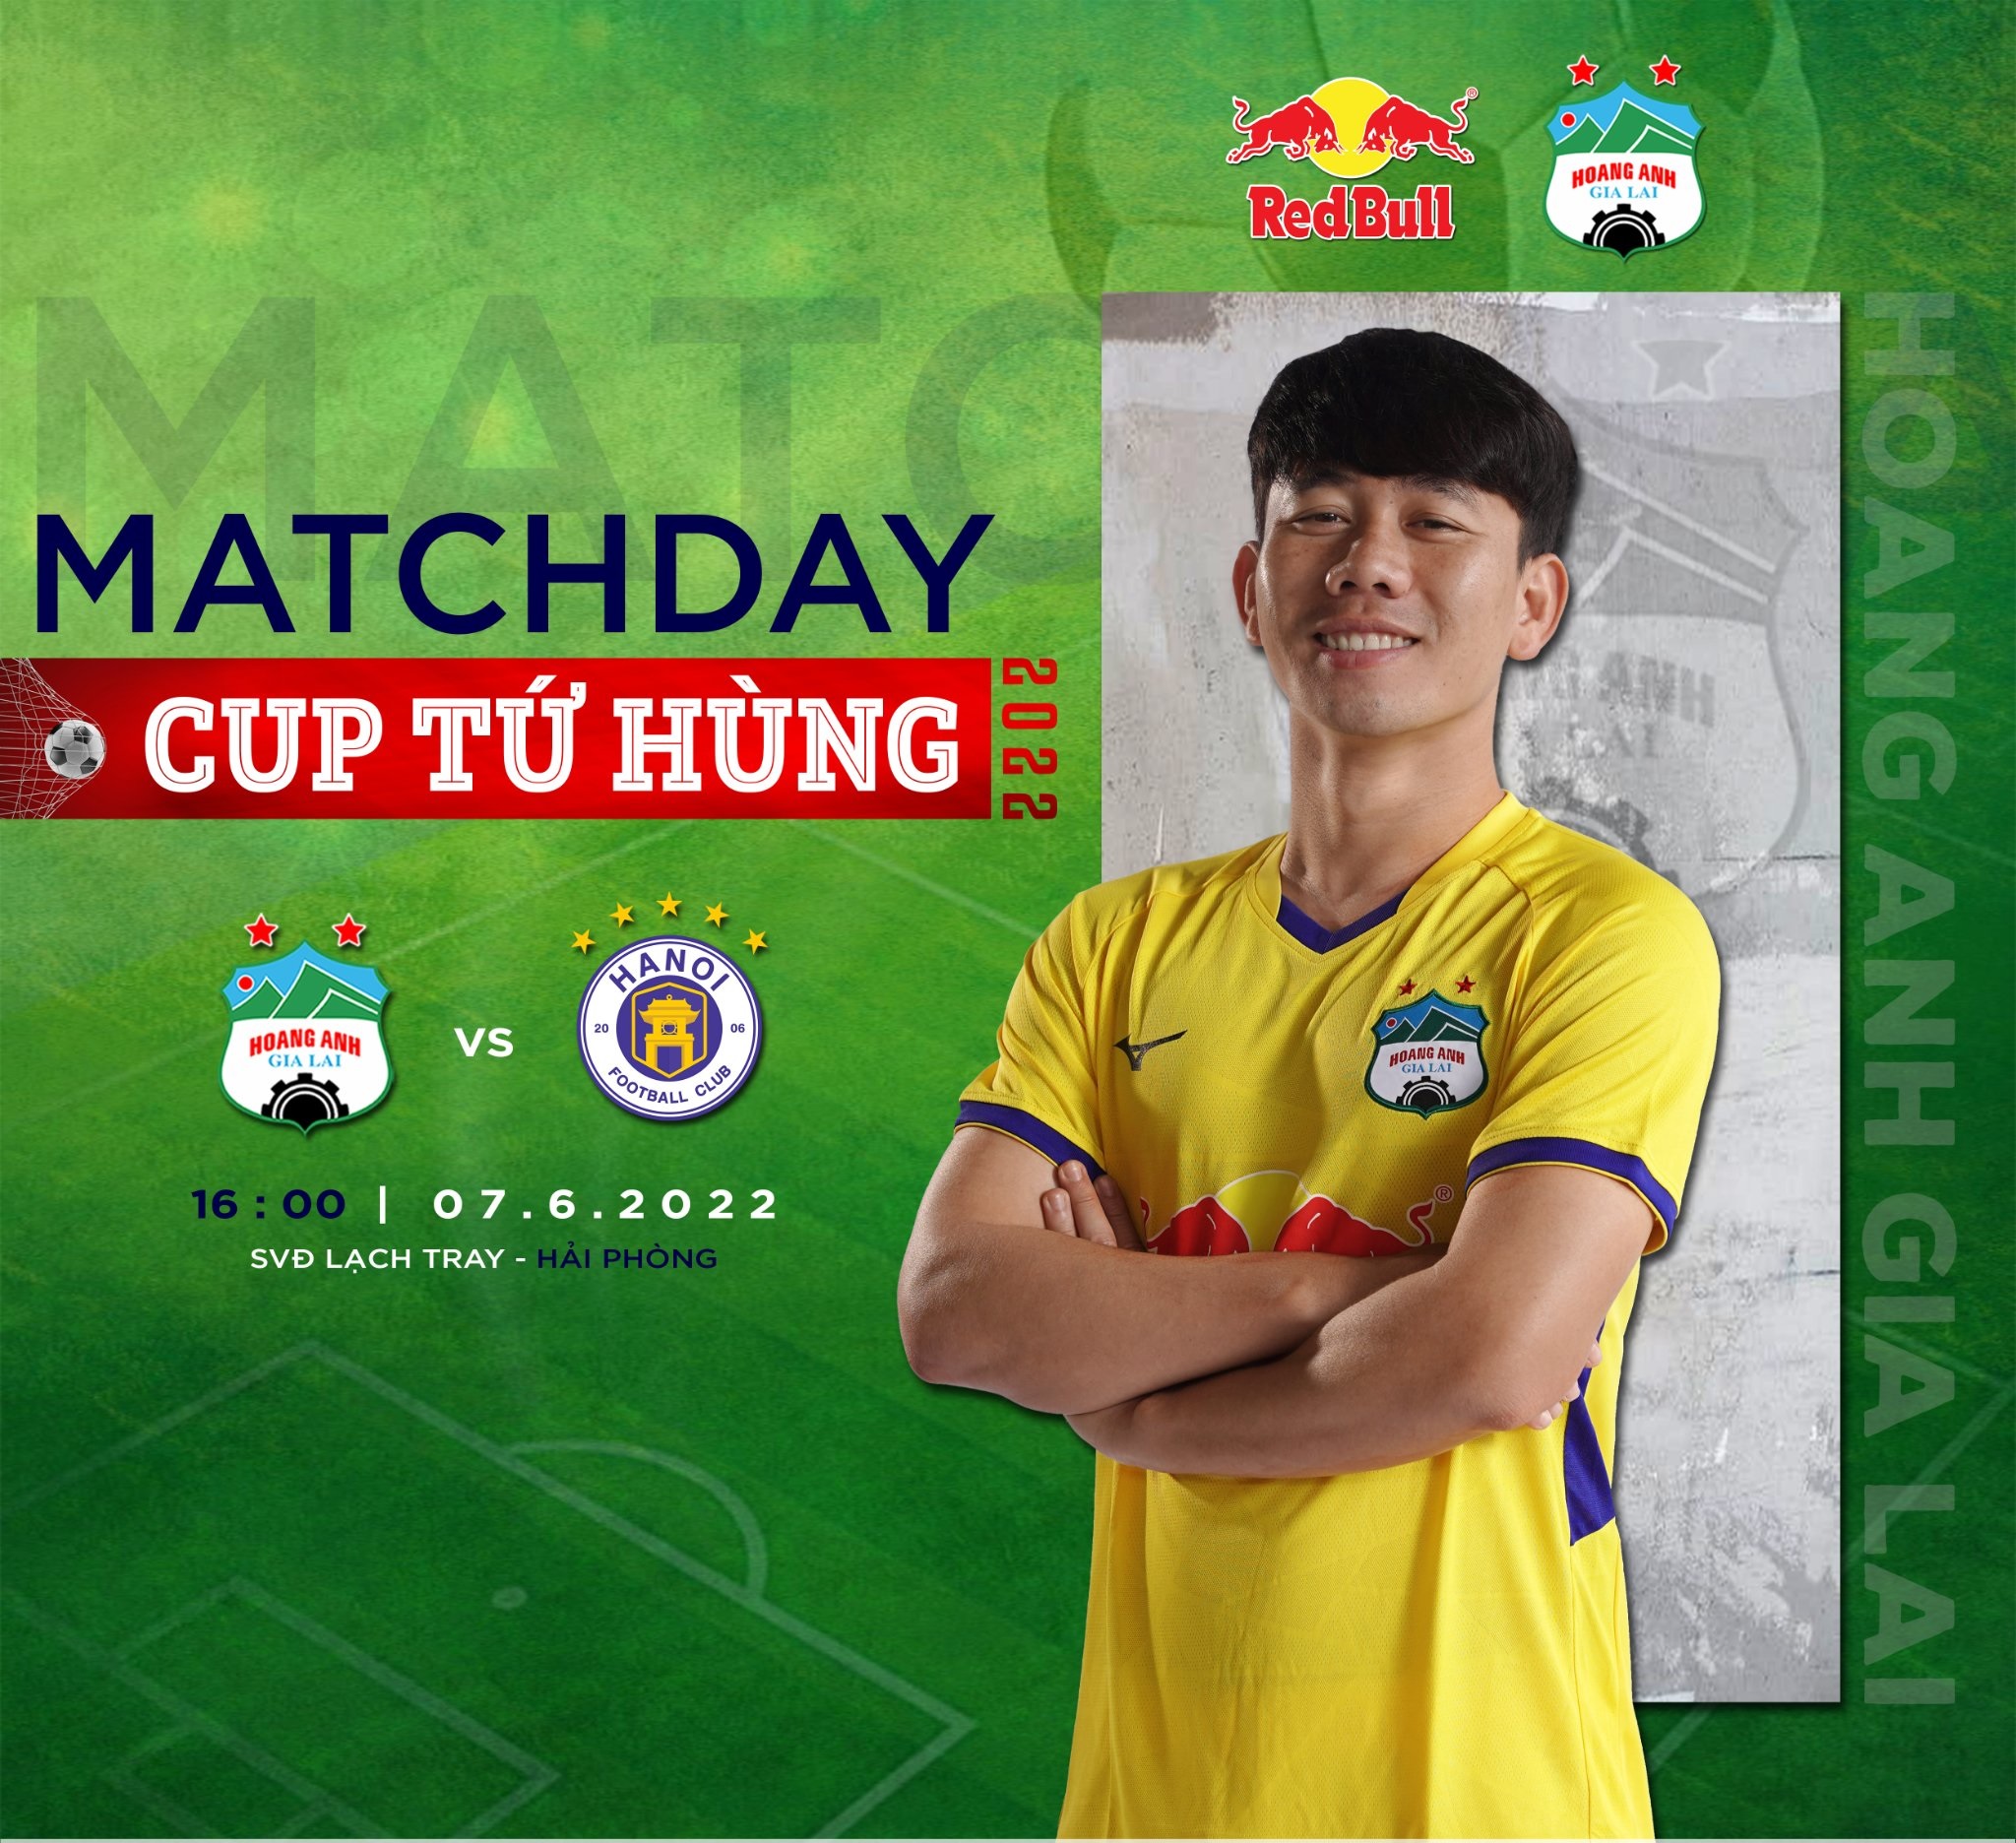 Trực tiếp bóng đá HAGL vs Hà Nội 7/6 - Cúp Tứ hùng 2022; Link xem trực tiếp HAGL vs Hà Nội Full HD